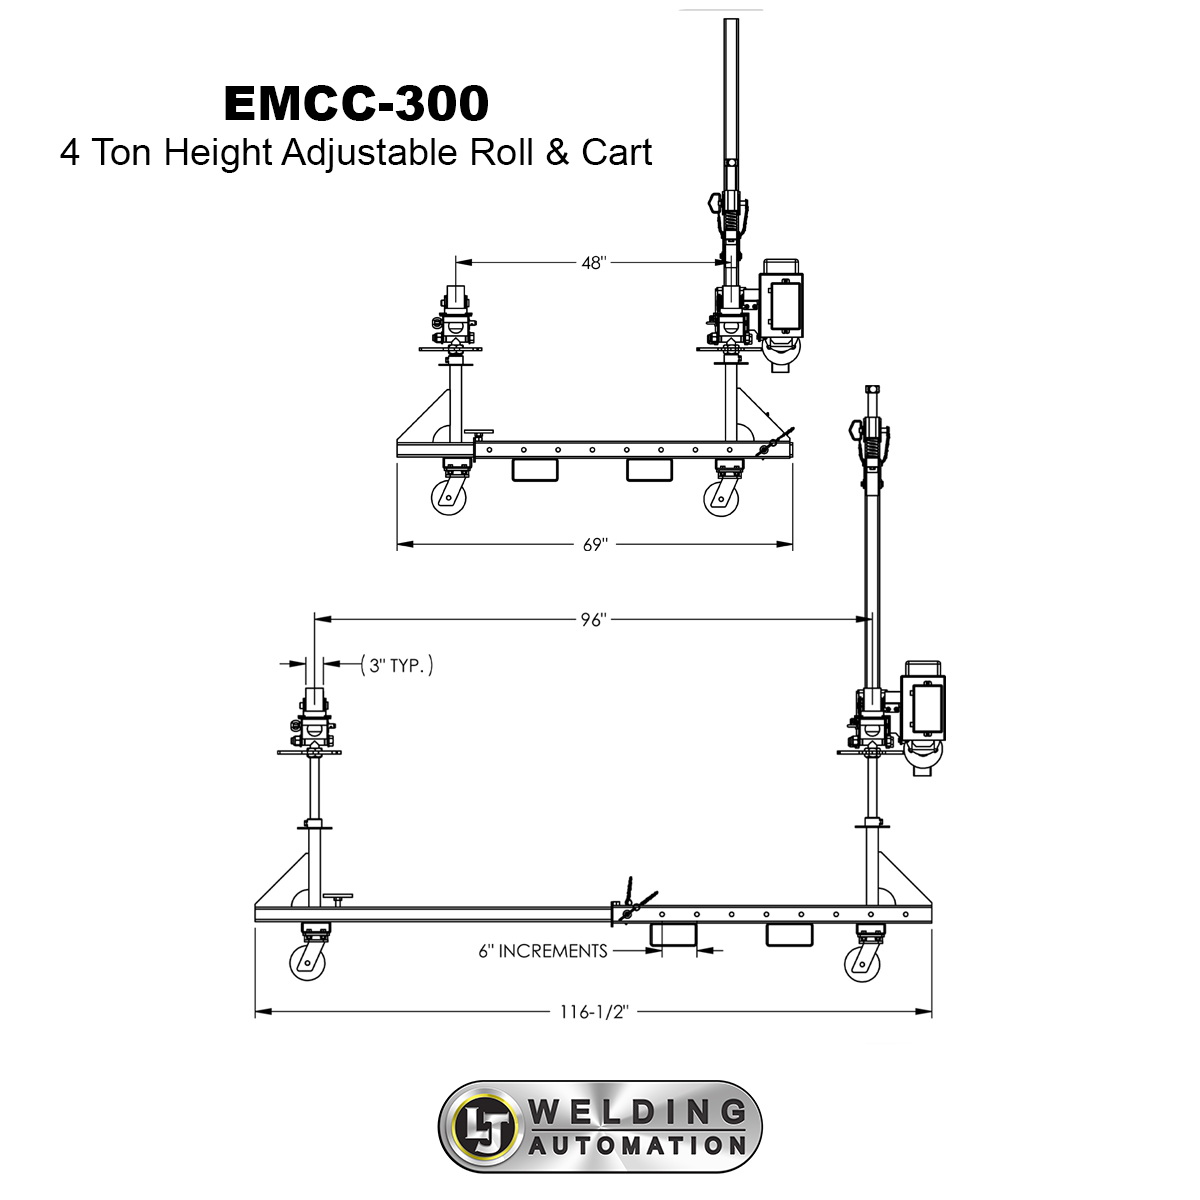 EMCC-300 tank rollers